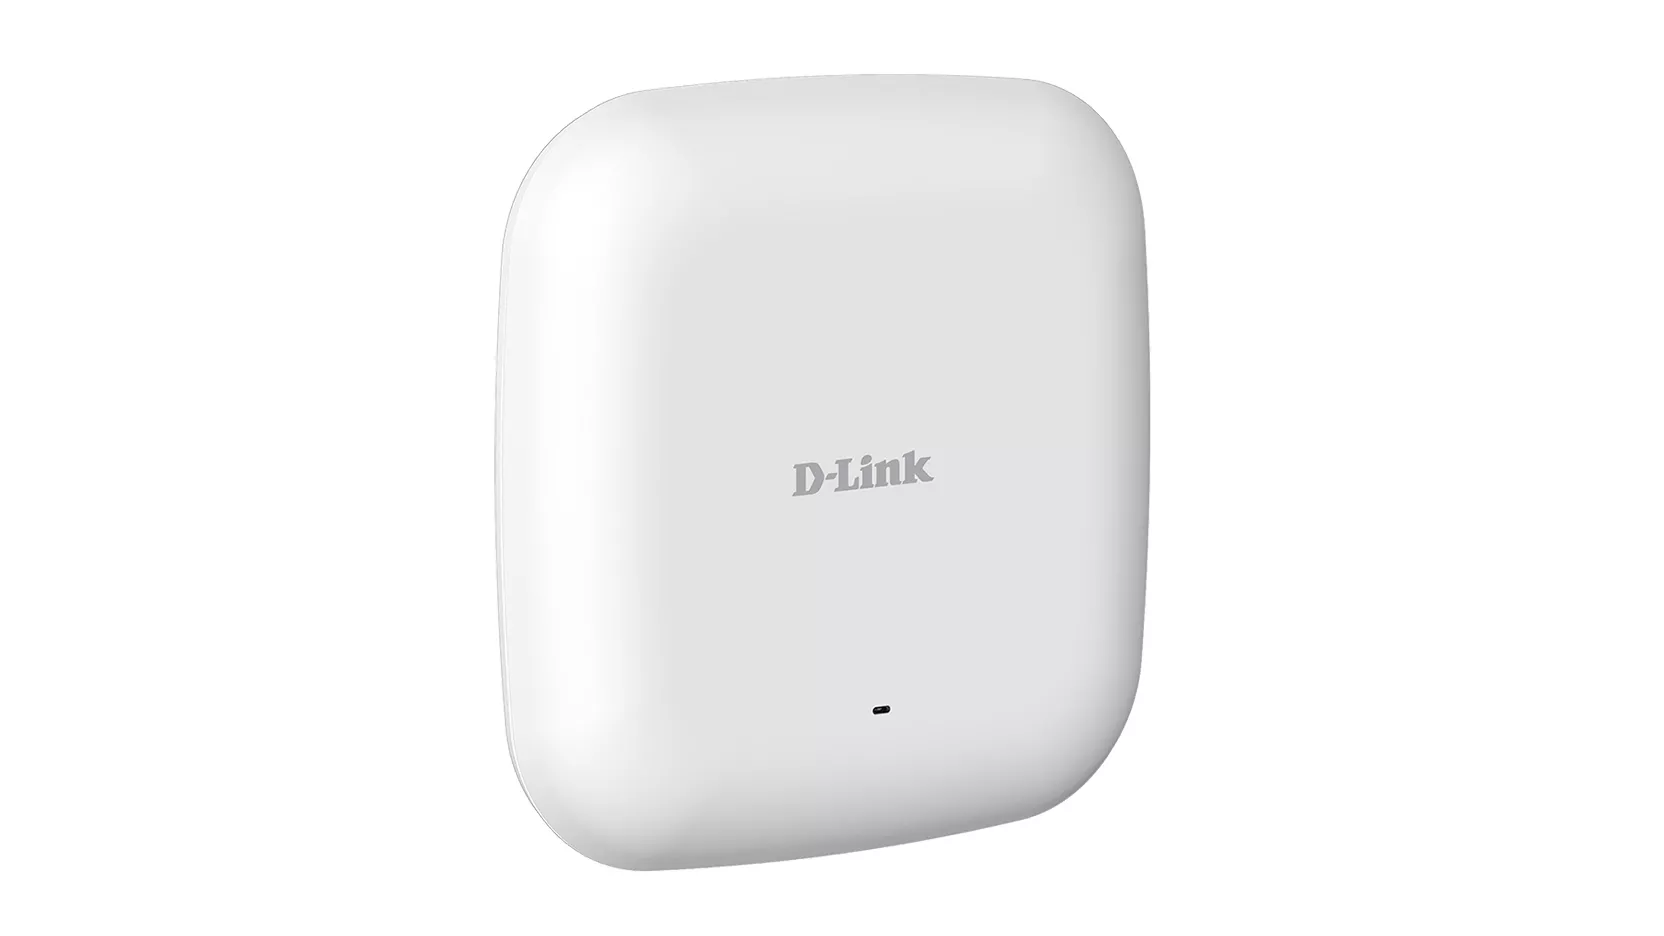 Vente D-LINK Accesspoint AC1200 Wave2 Dual Band PoE DAP D-Link au meilleur prix - visuel 2